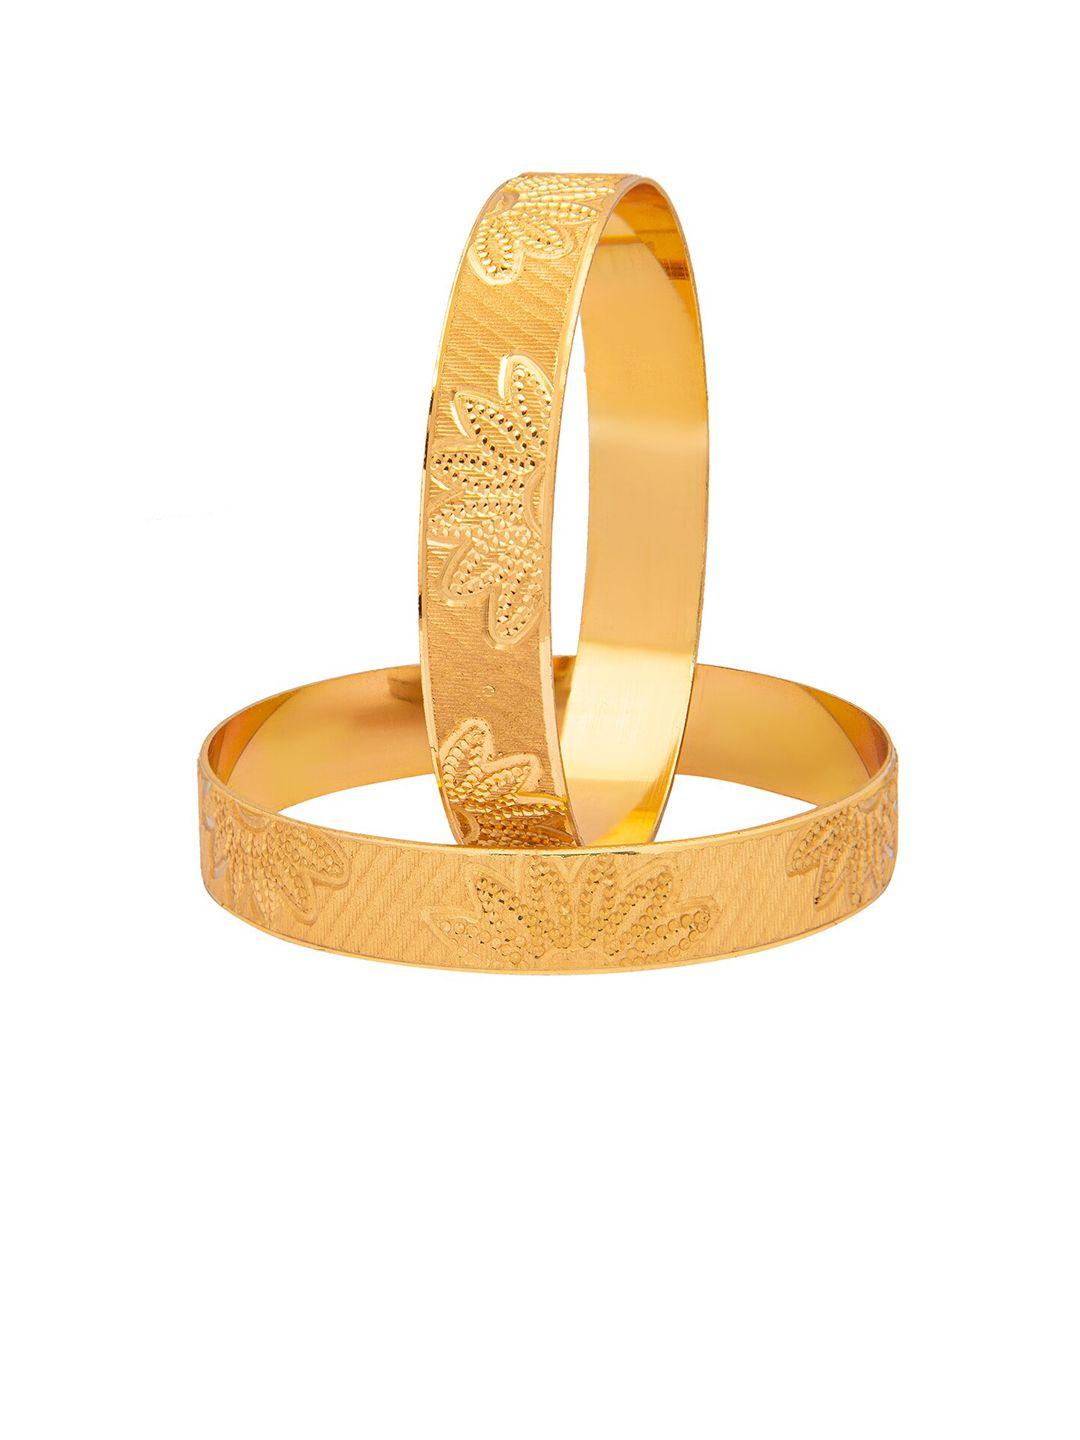 shining jewel - by shivansh set of 2 gold-plated bangle